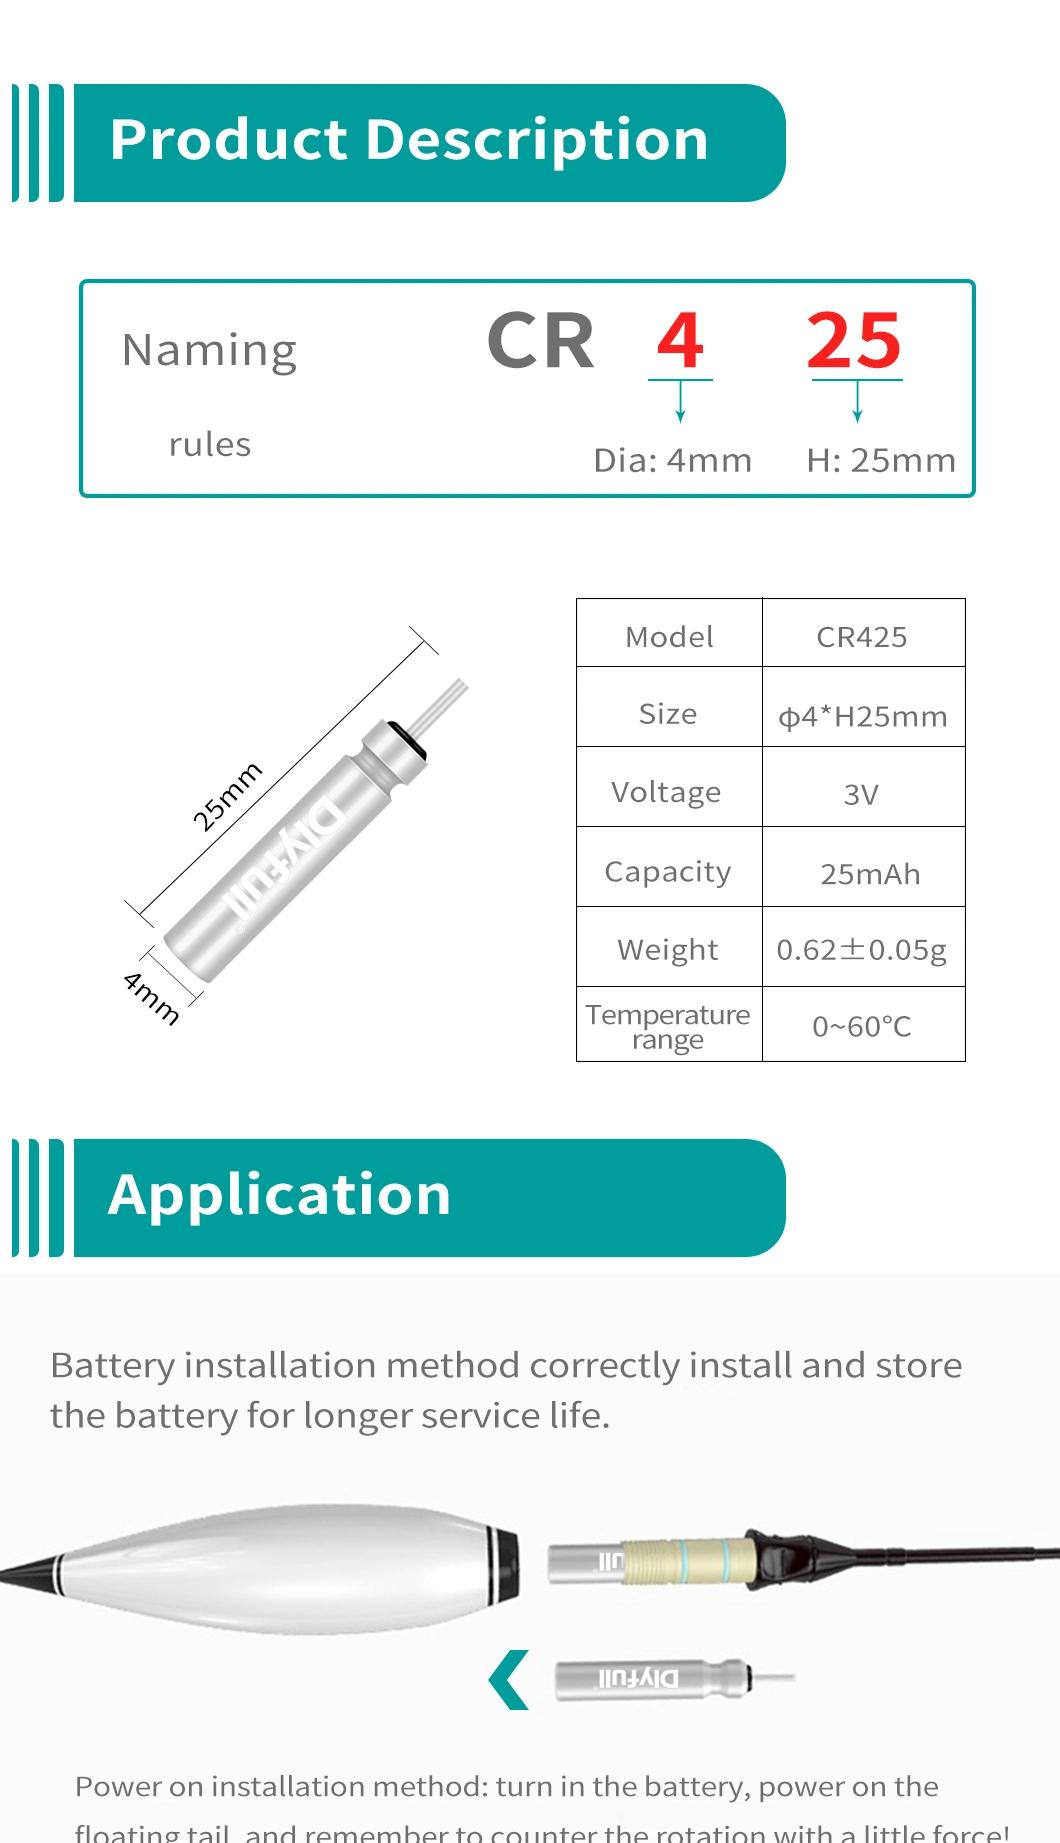 Dlyfull 3V Cr425 Pin Type Battery for Night Fishing Battery